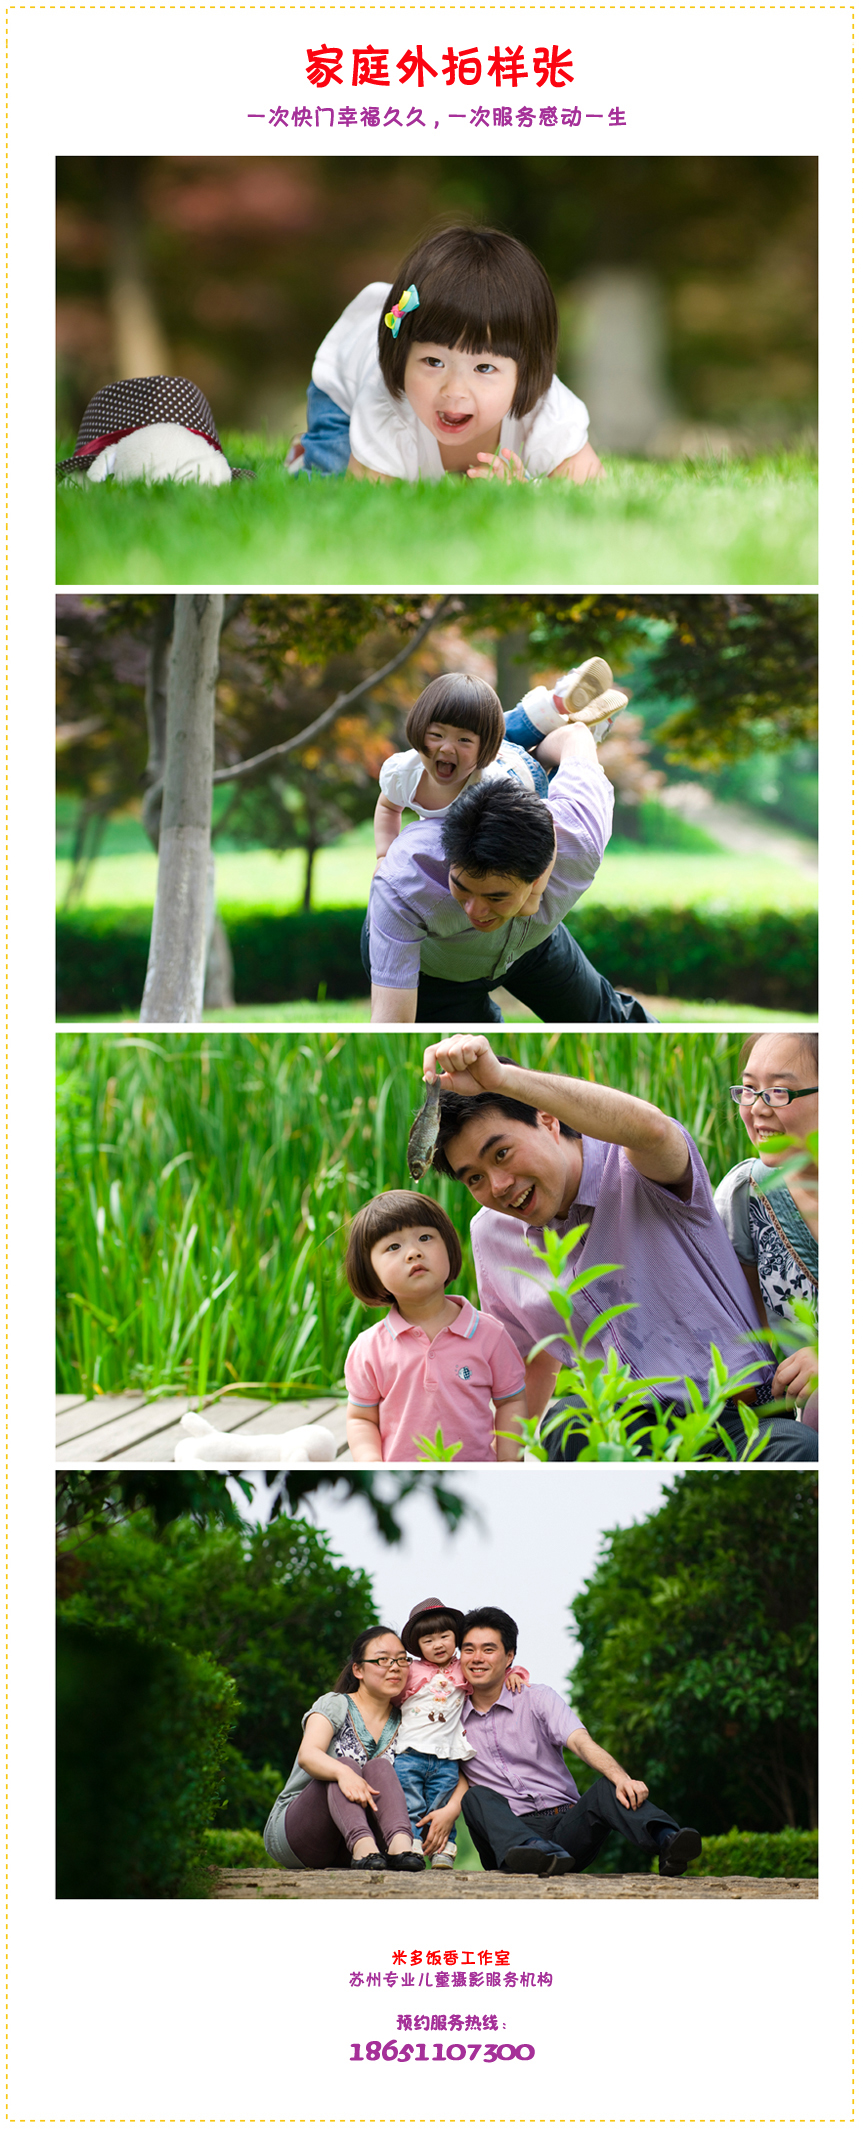 苏州专业儿童摄影 - 米多饭香工作室 - Jamie's Mind Lab - Jamiewang.com